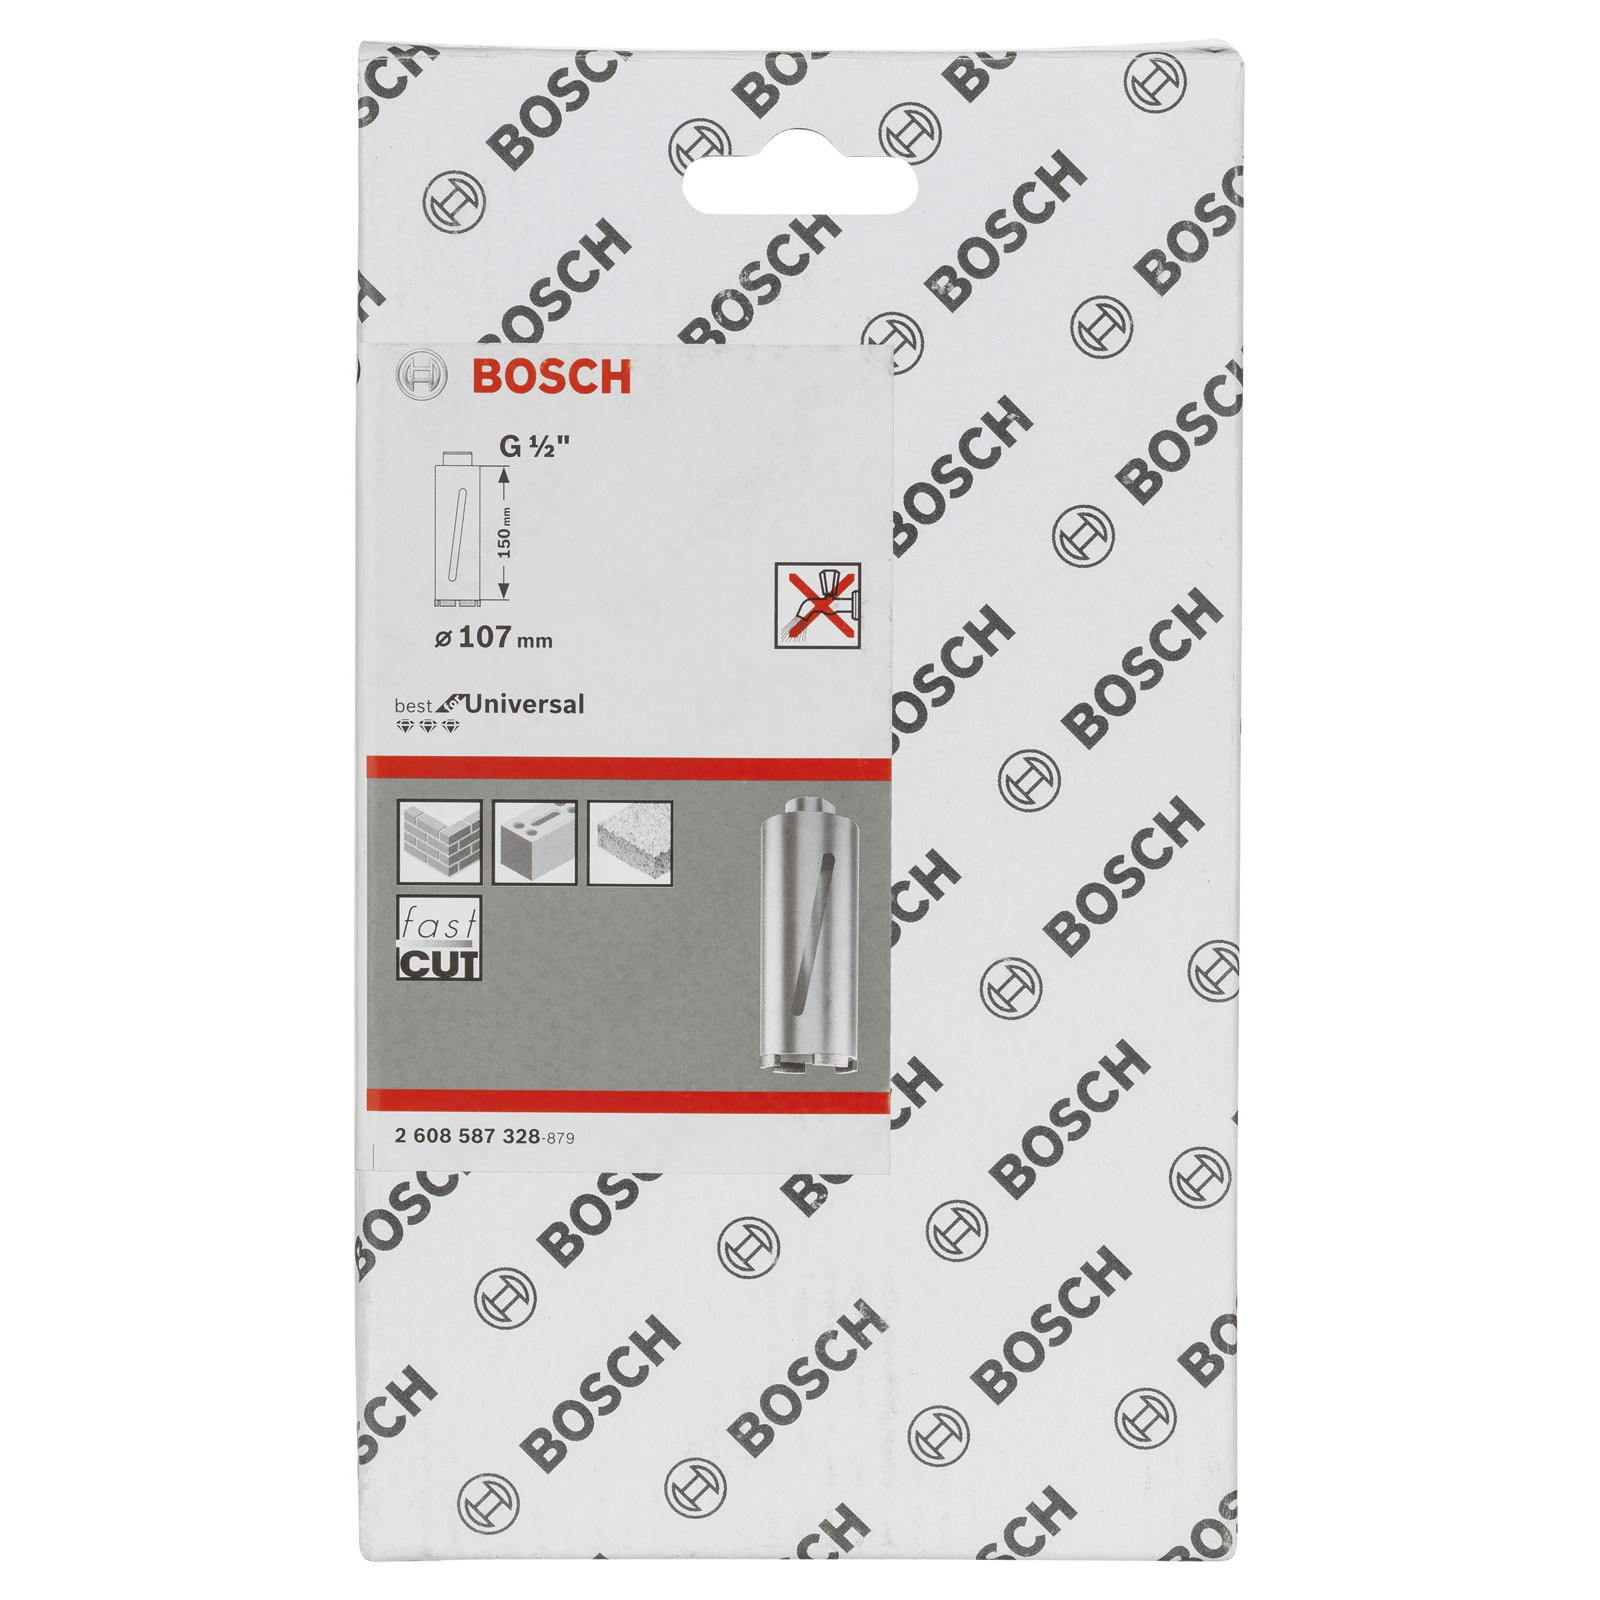 Standard for Universal 6, 107 mm 150 mm Bosch Diamanttrockenbohrkrone G 1/2" 